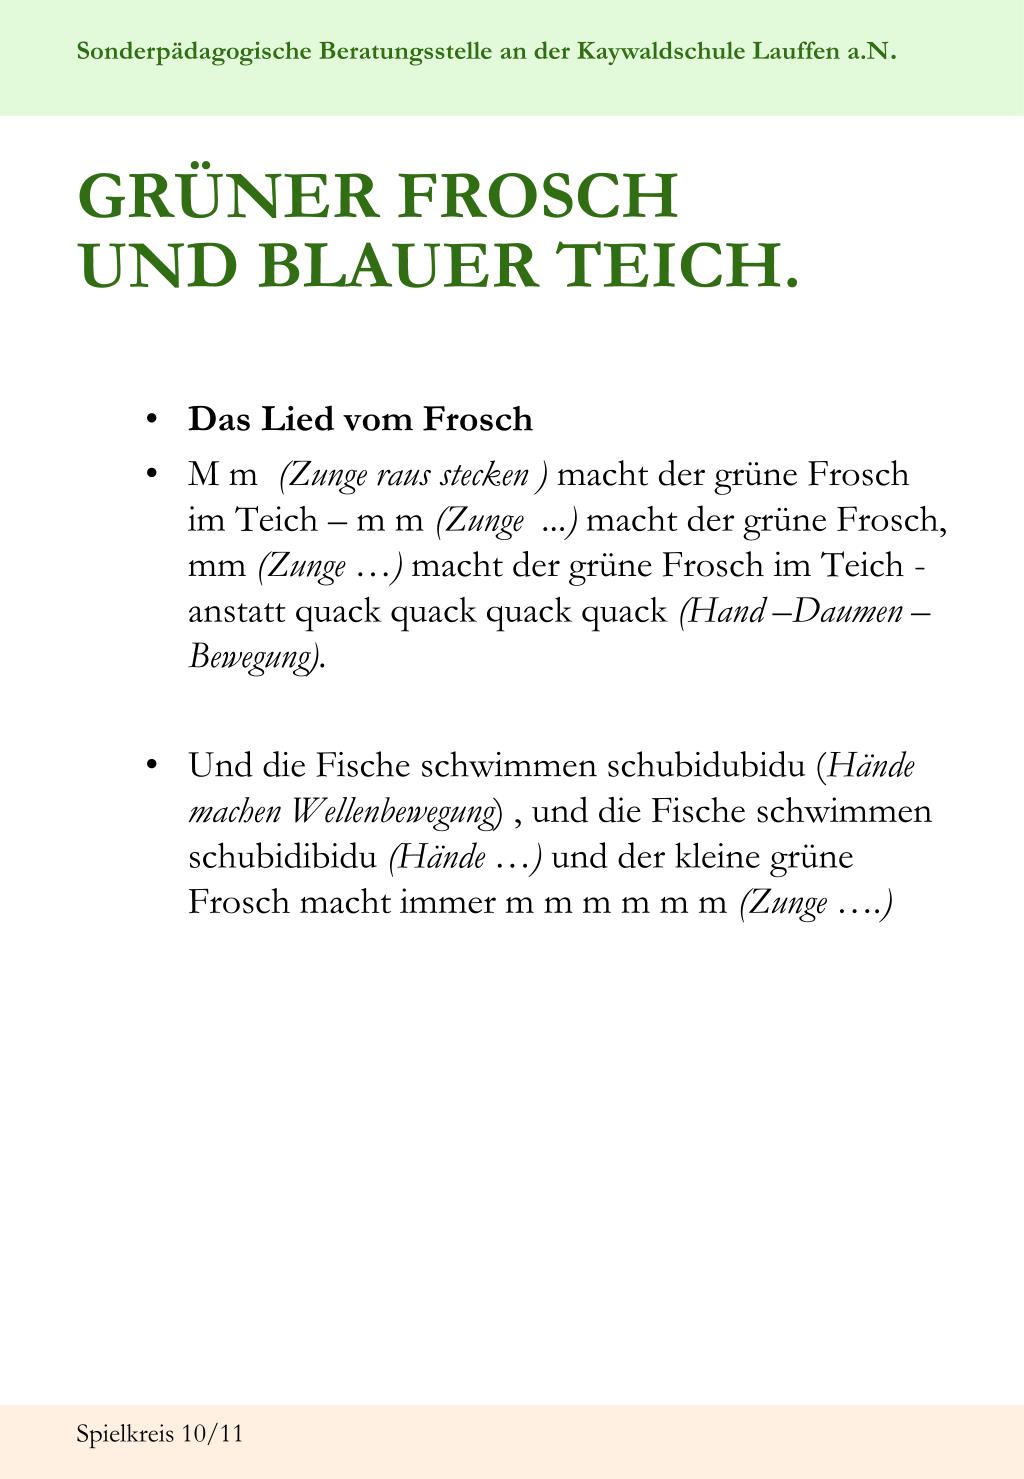 PPT - GRÜNER FROSCH UND BLAUER TEICH. PowerPoint Presentation, free  download - ID:1038170